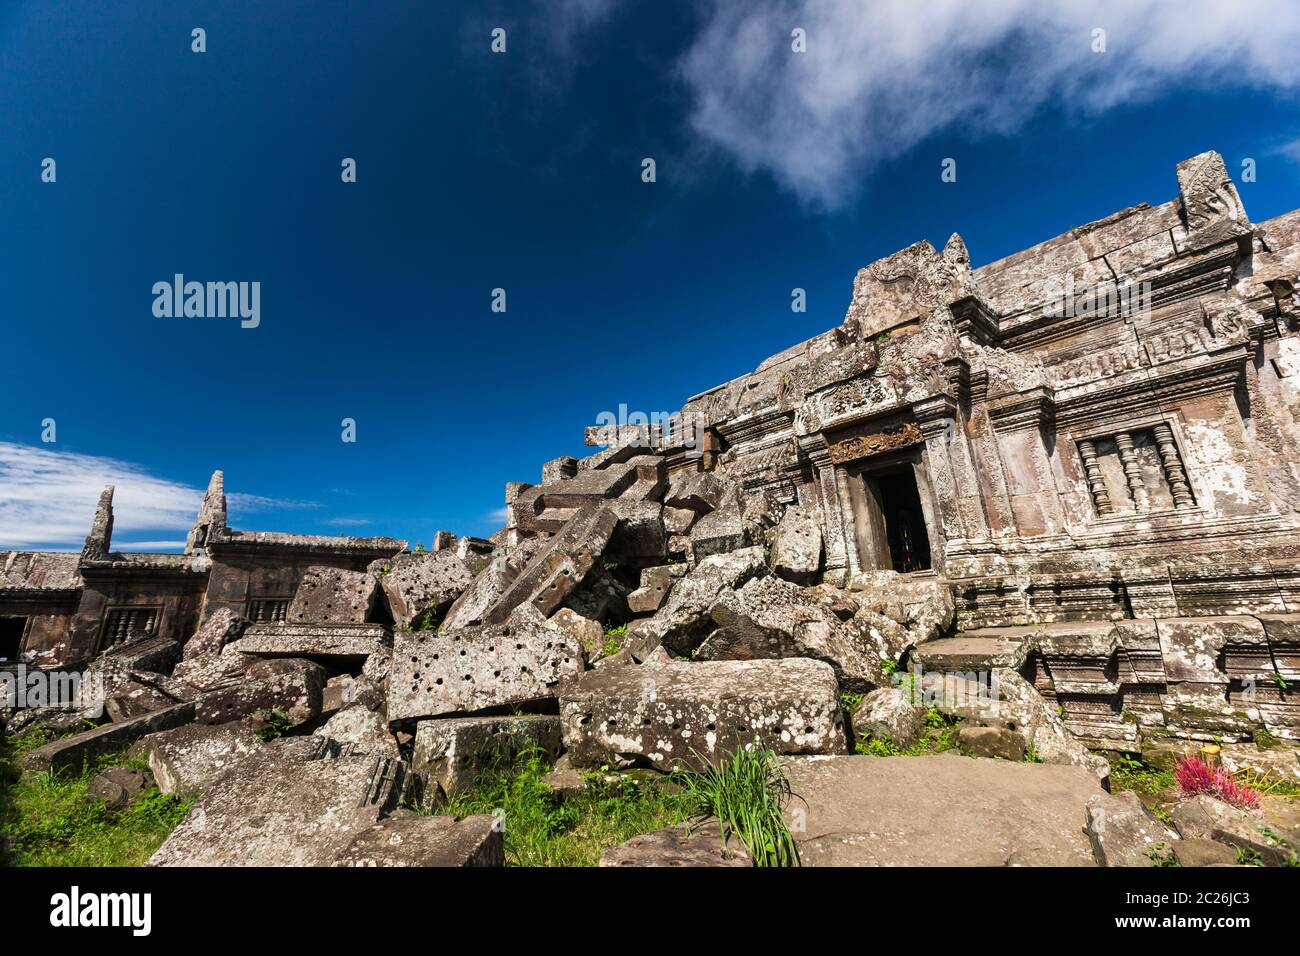 Temple Preah Vihear, Ruben et temple principal, Bâtiment principal, Temple principal, temple hindou de l'ancien empire khmer, Cambodge, Asie du Sud-est, Asie Banque D'Images